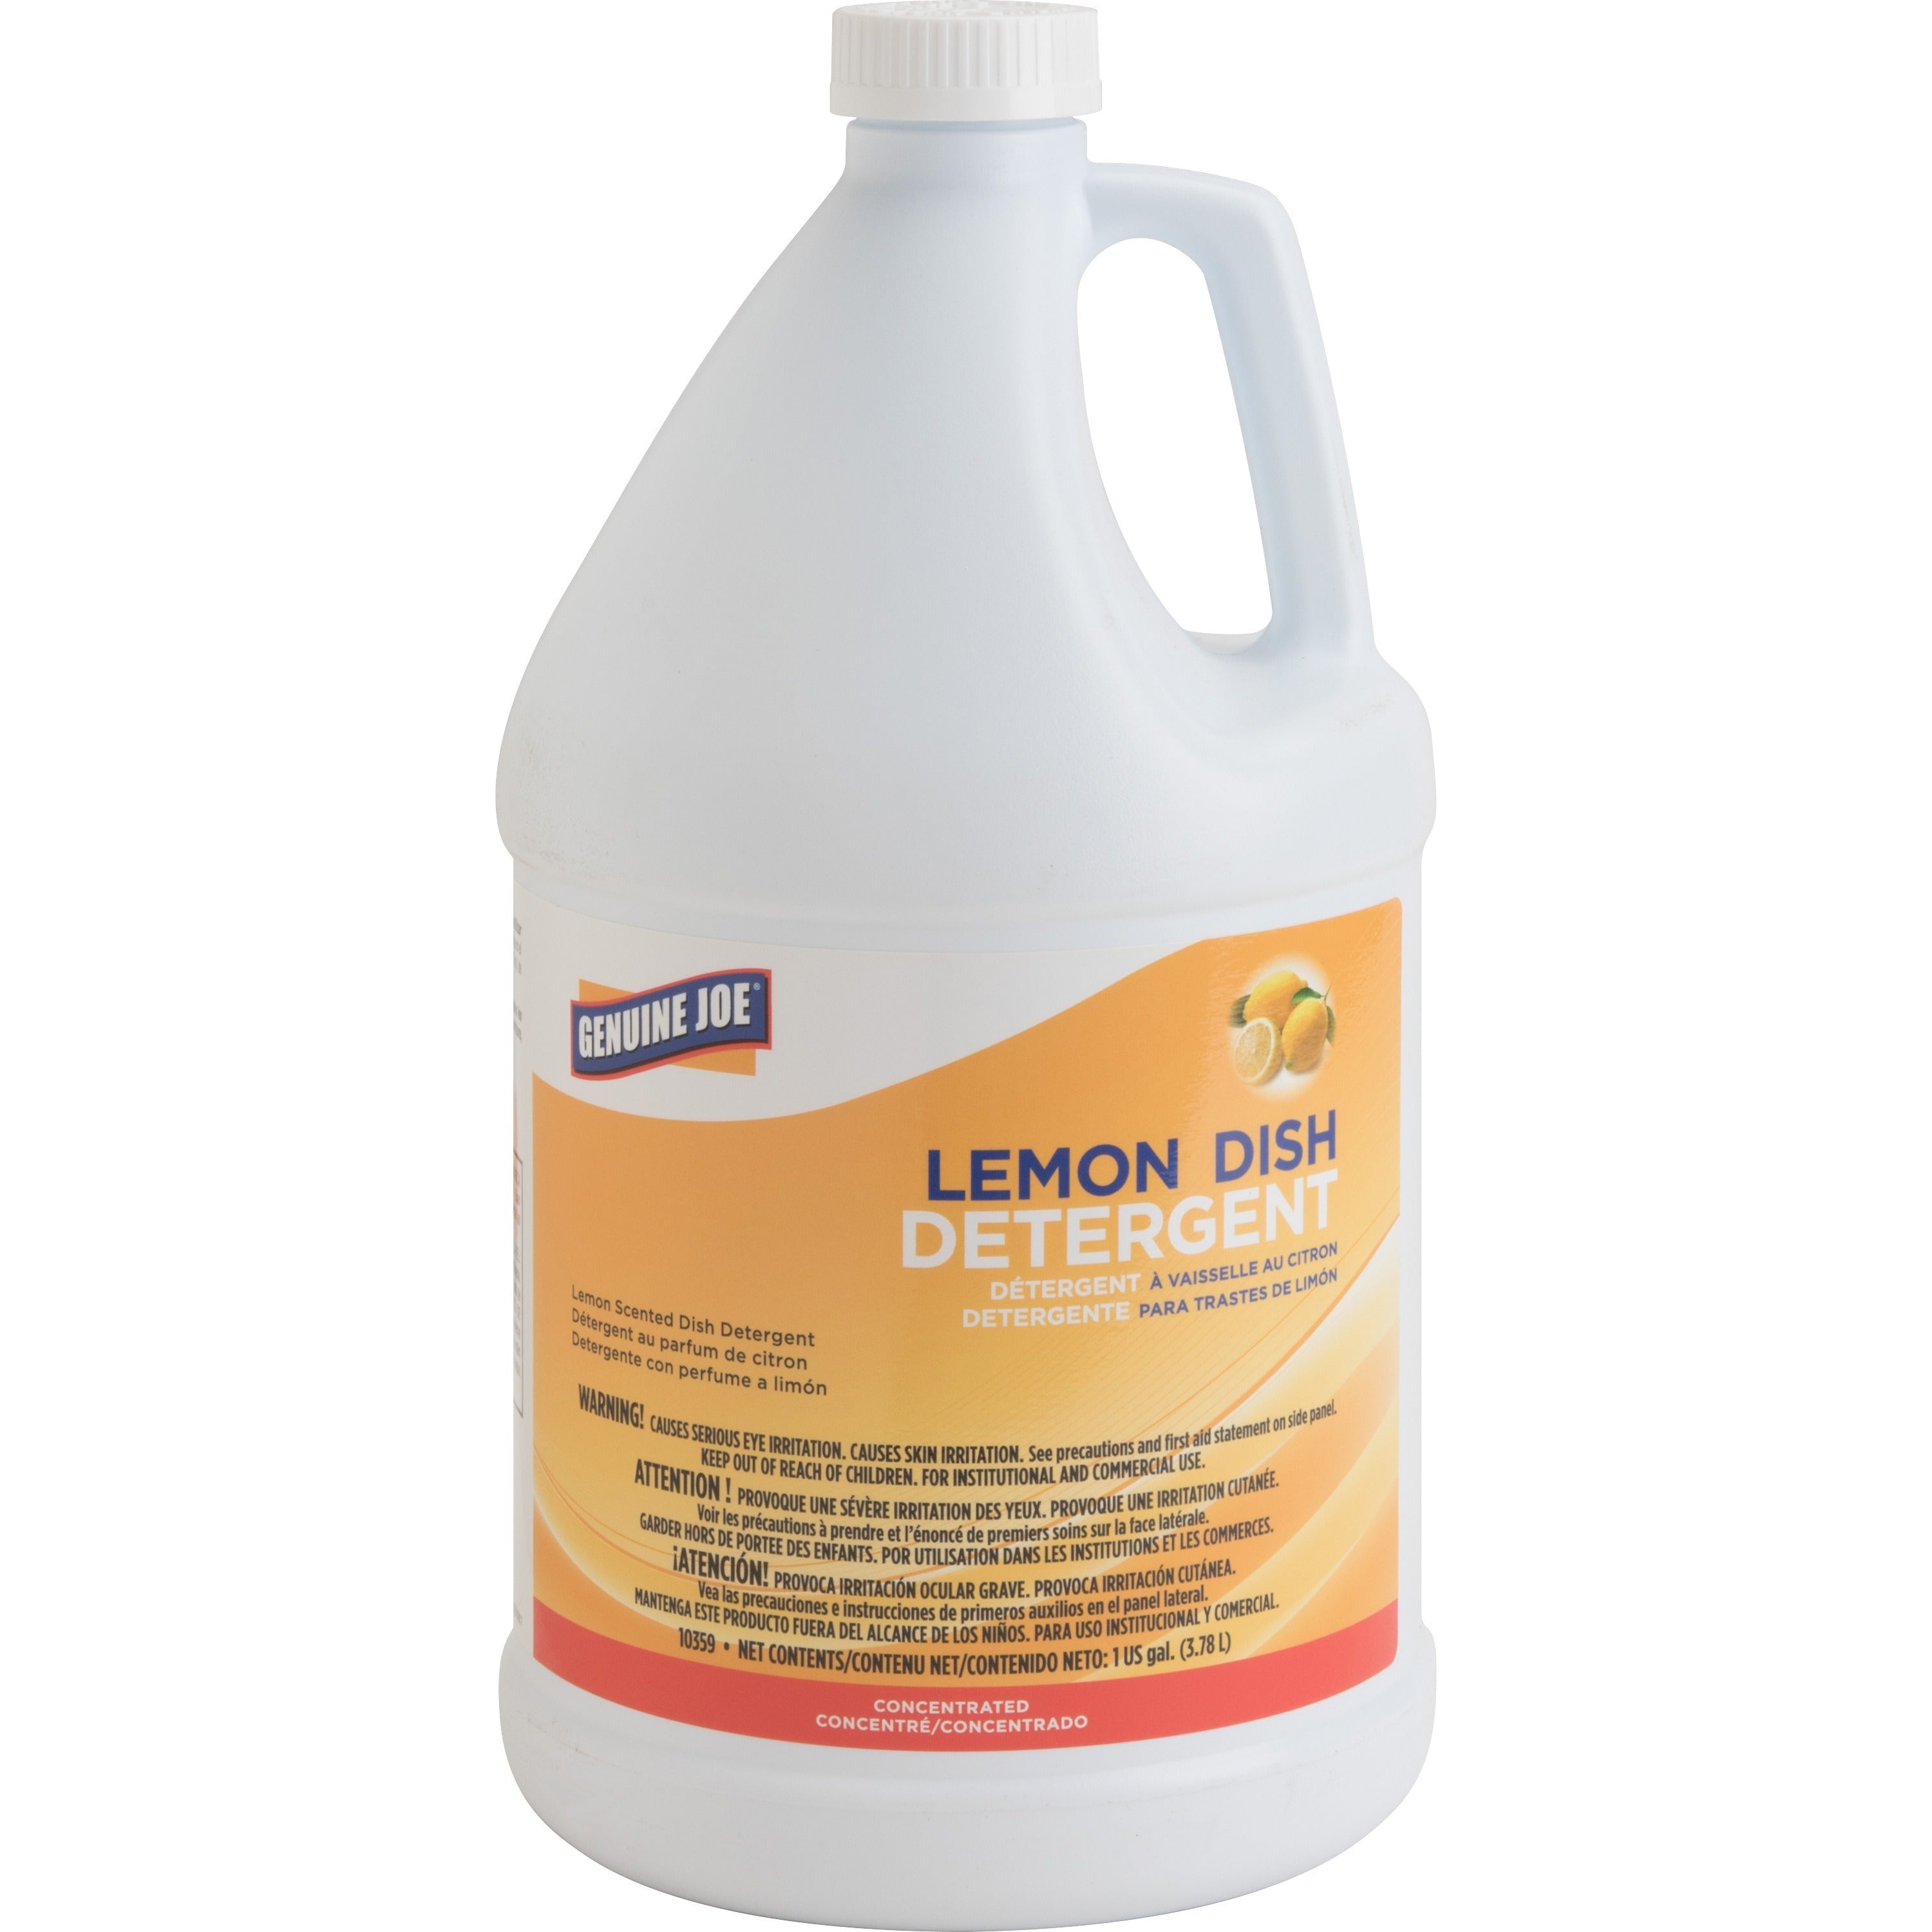 Genuine Joe Lemon Dish Detergent Gallon - 128 fl oz (4 quart) - Lemon Scent - 1 Each - Pleasant Scent, Refillable, Strong, Long Lasting, Film-free - White